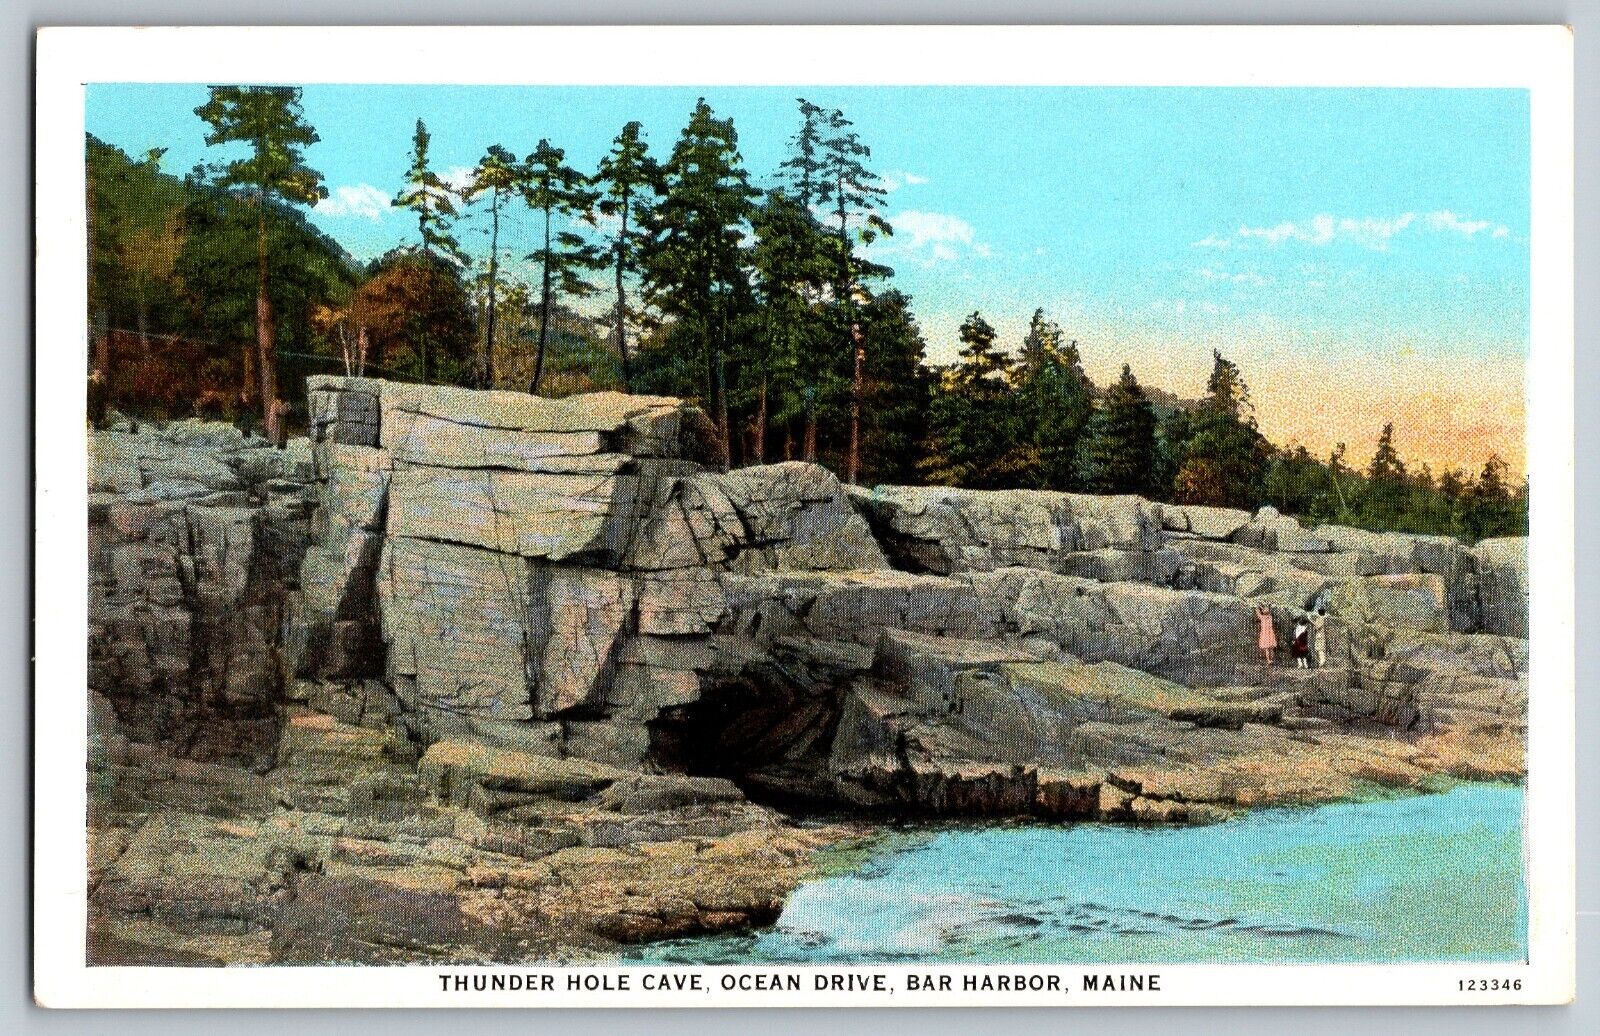 Bar Harbor, Maine - Thunder Hole Cave - Ocean Drive - Vintage Postcard